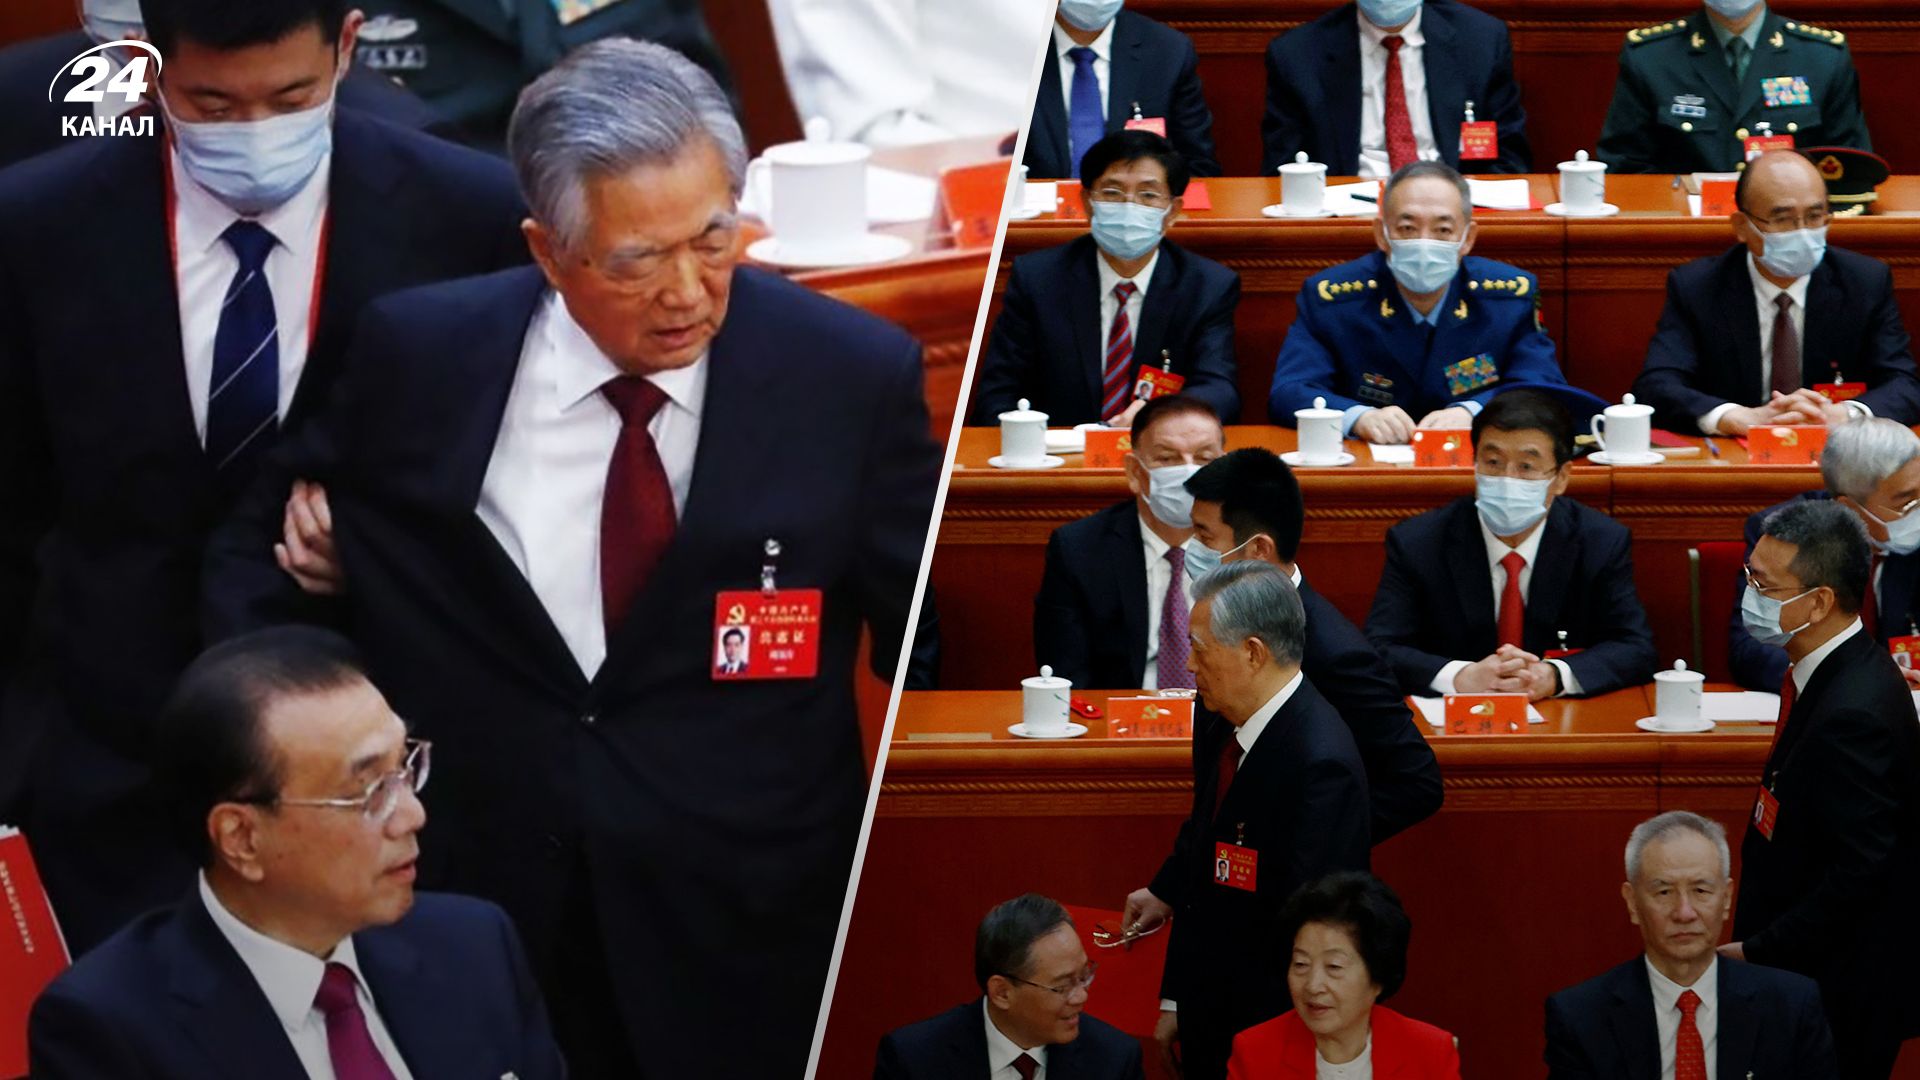 Скандал на съезде Коммунистической партии в Китае - Ху Цзинтао вывели под руки